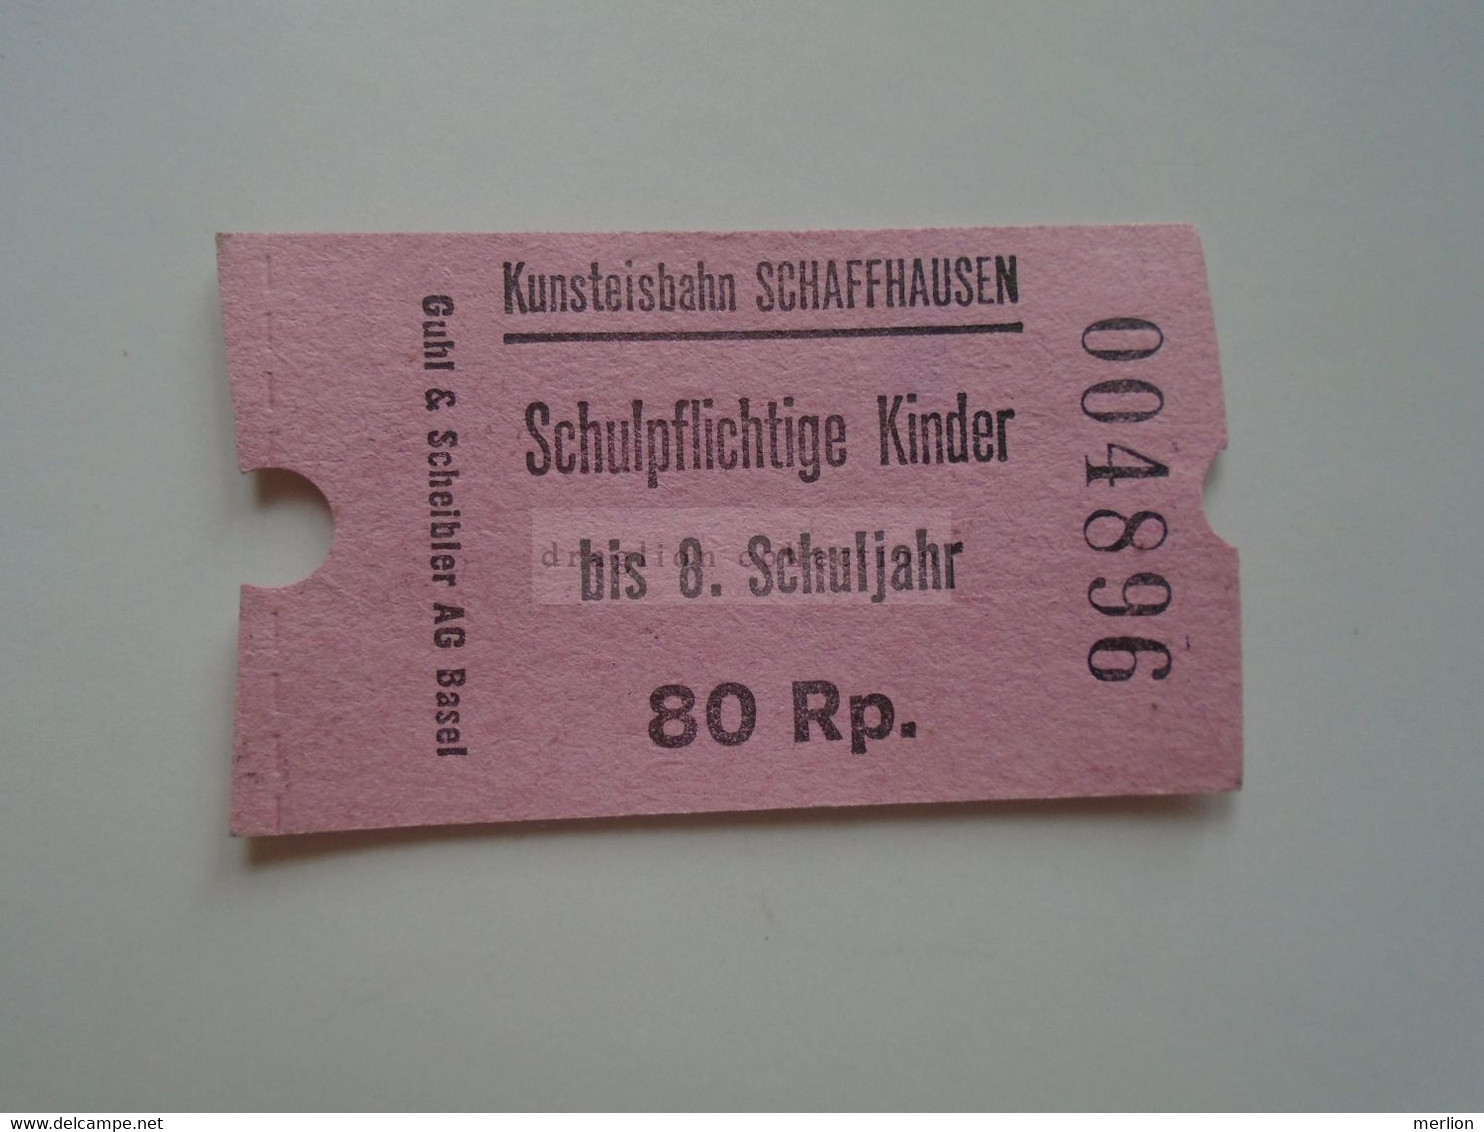 DT013 Kunsteisbahn Schaffhausen -Artificial Ice Rink Schulpflichtige Kinder Bis 8 Schuljahr  80 Rp.  1960-80's Skating - Europa